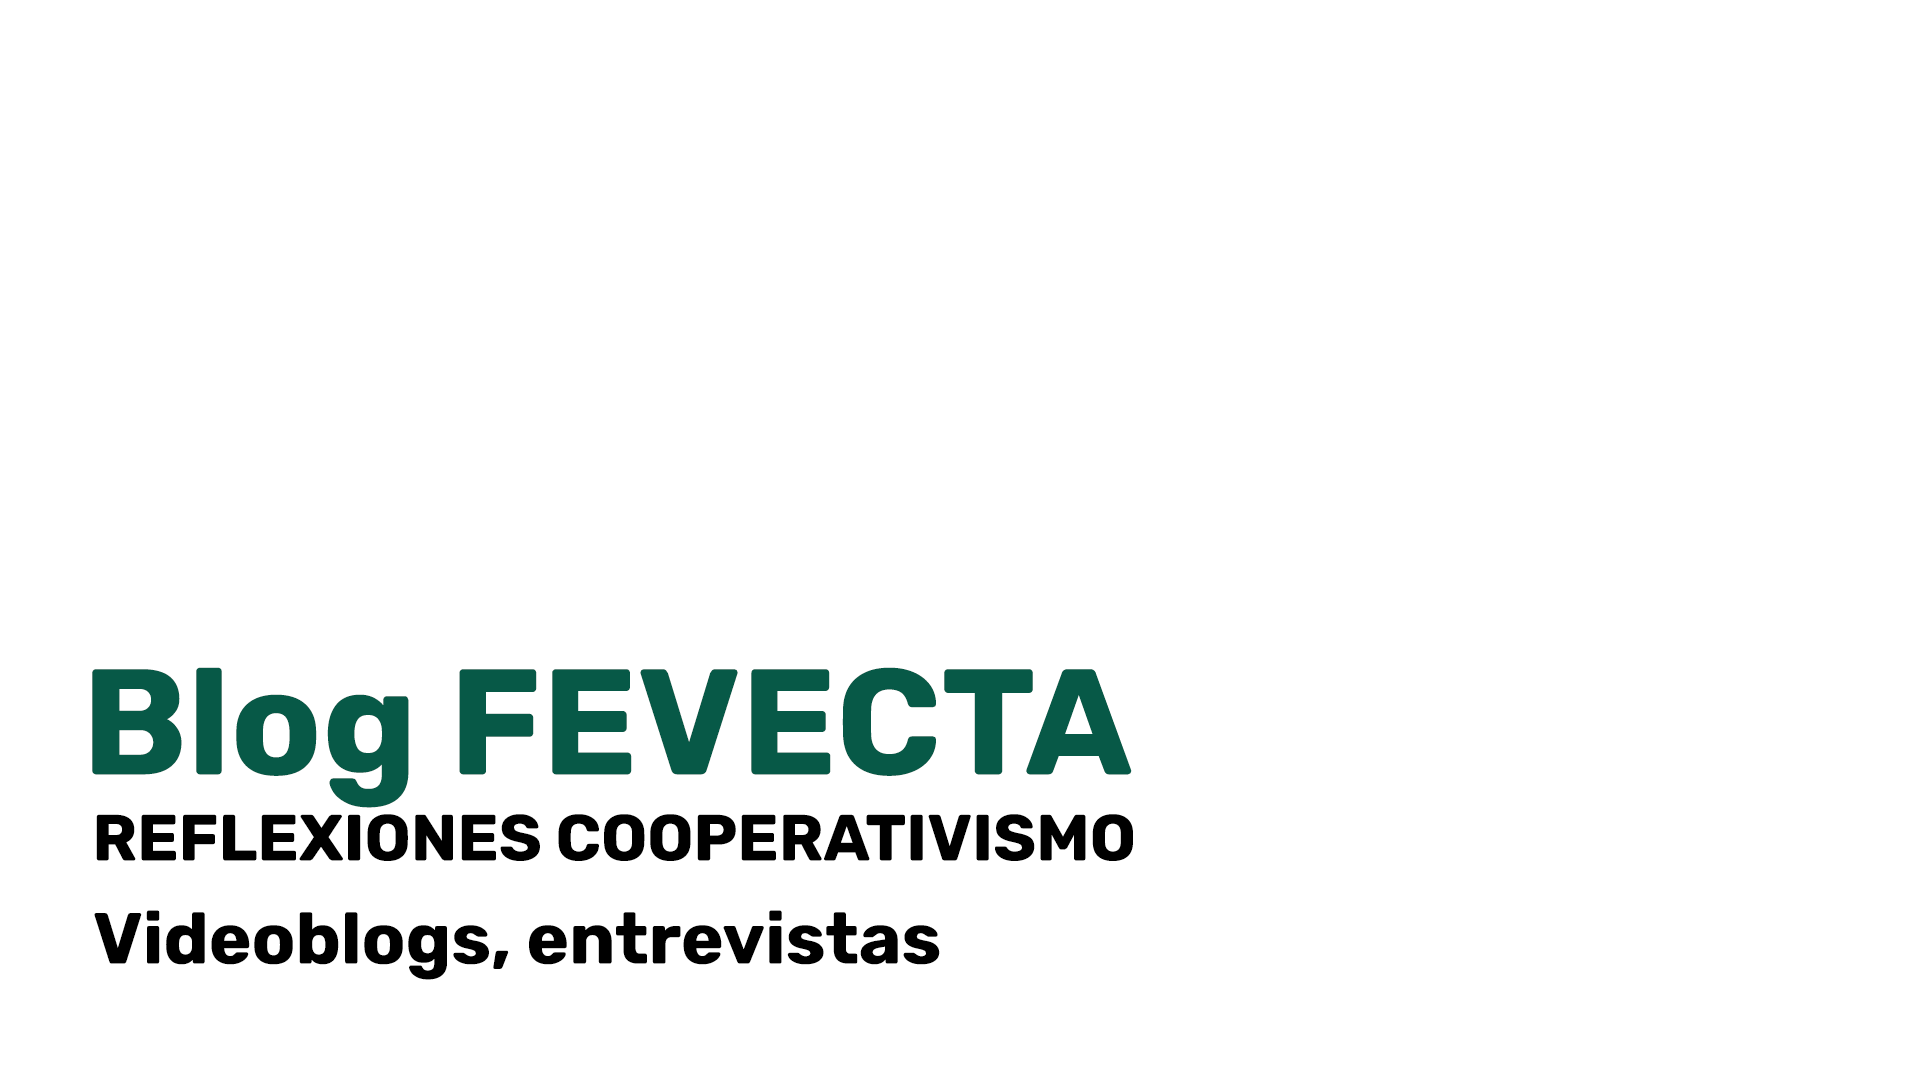 Blog FEVECTA, reflexiones cooperativismo